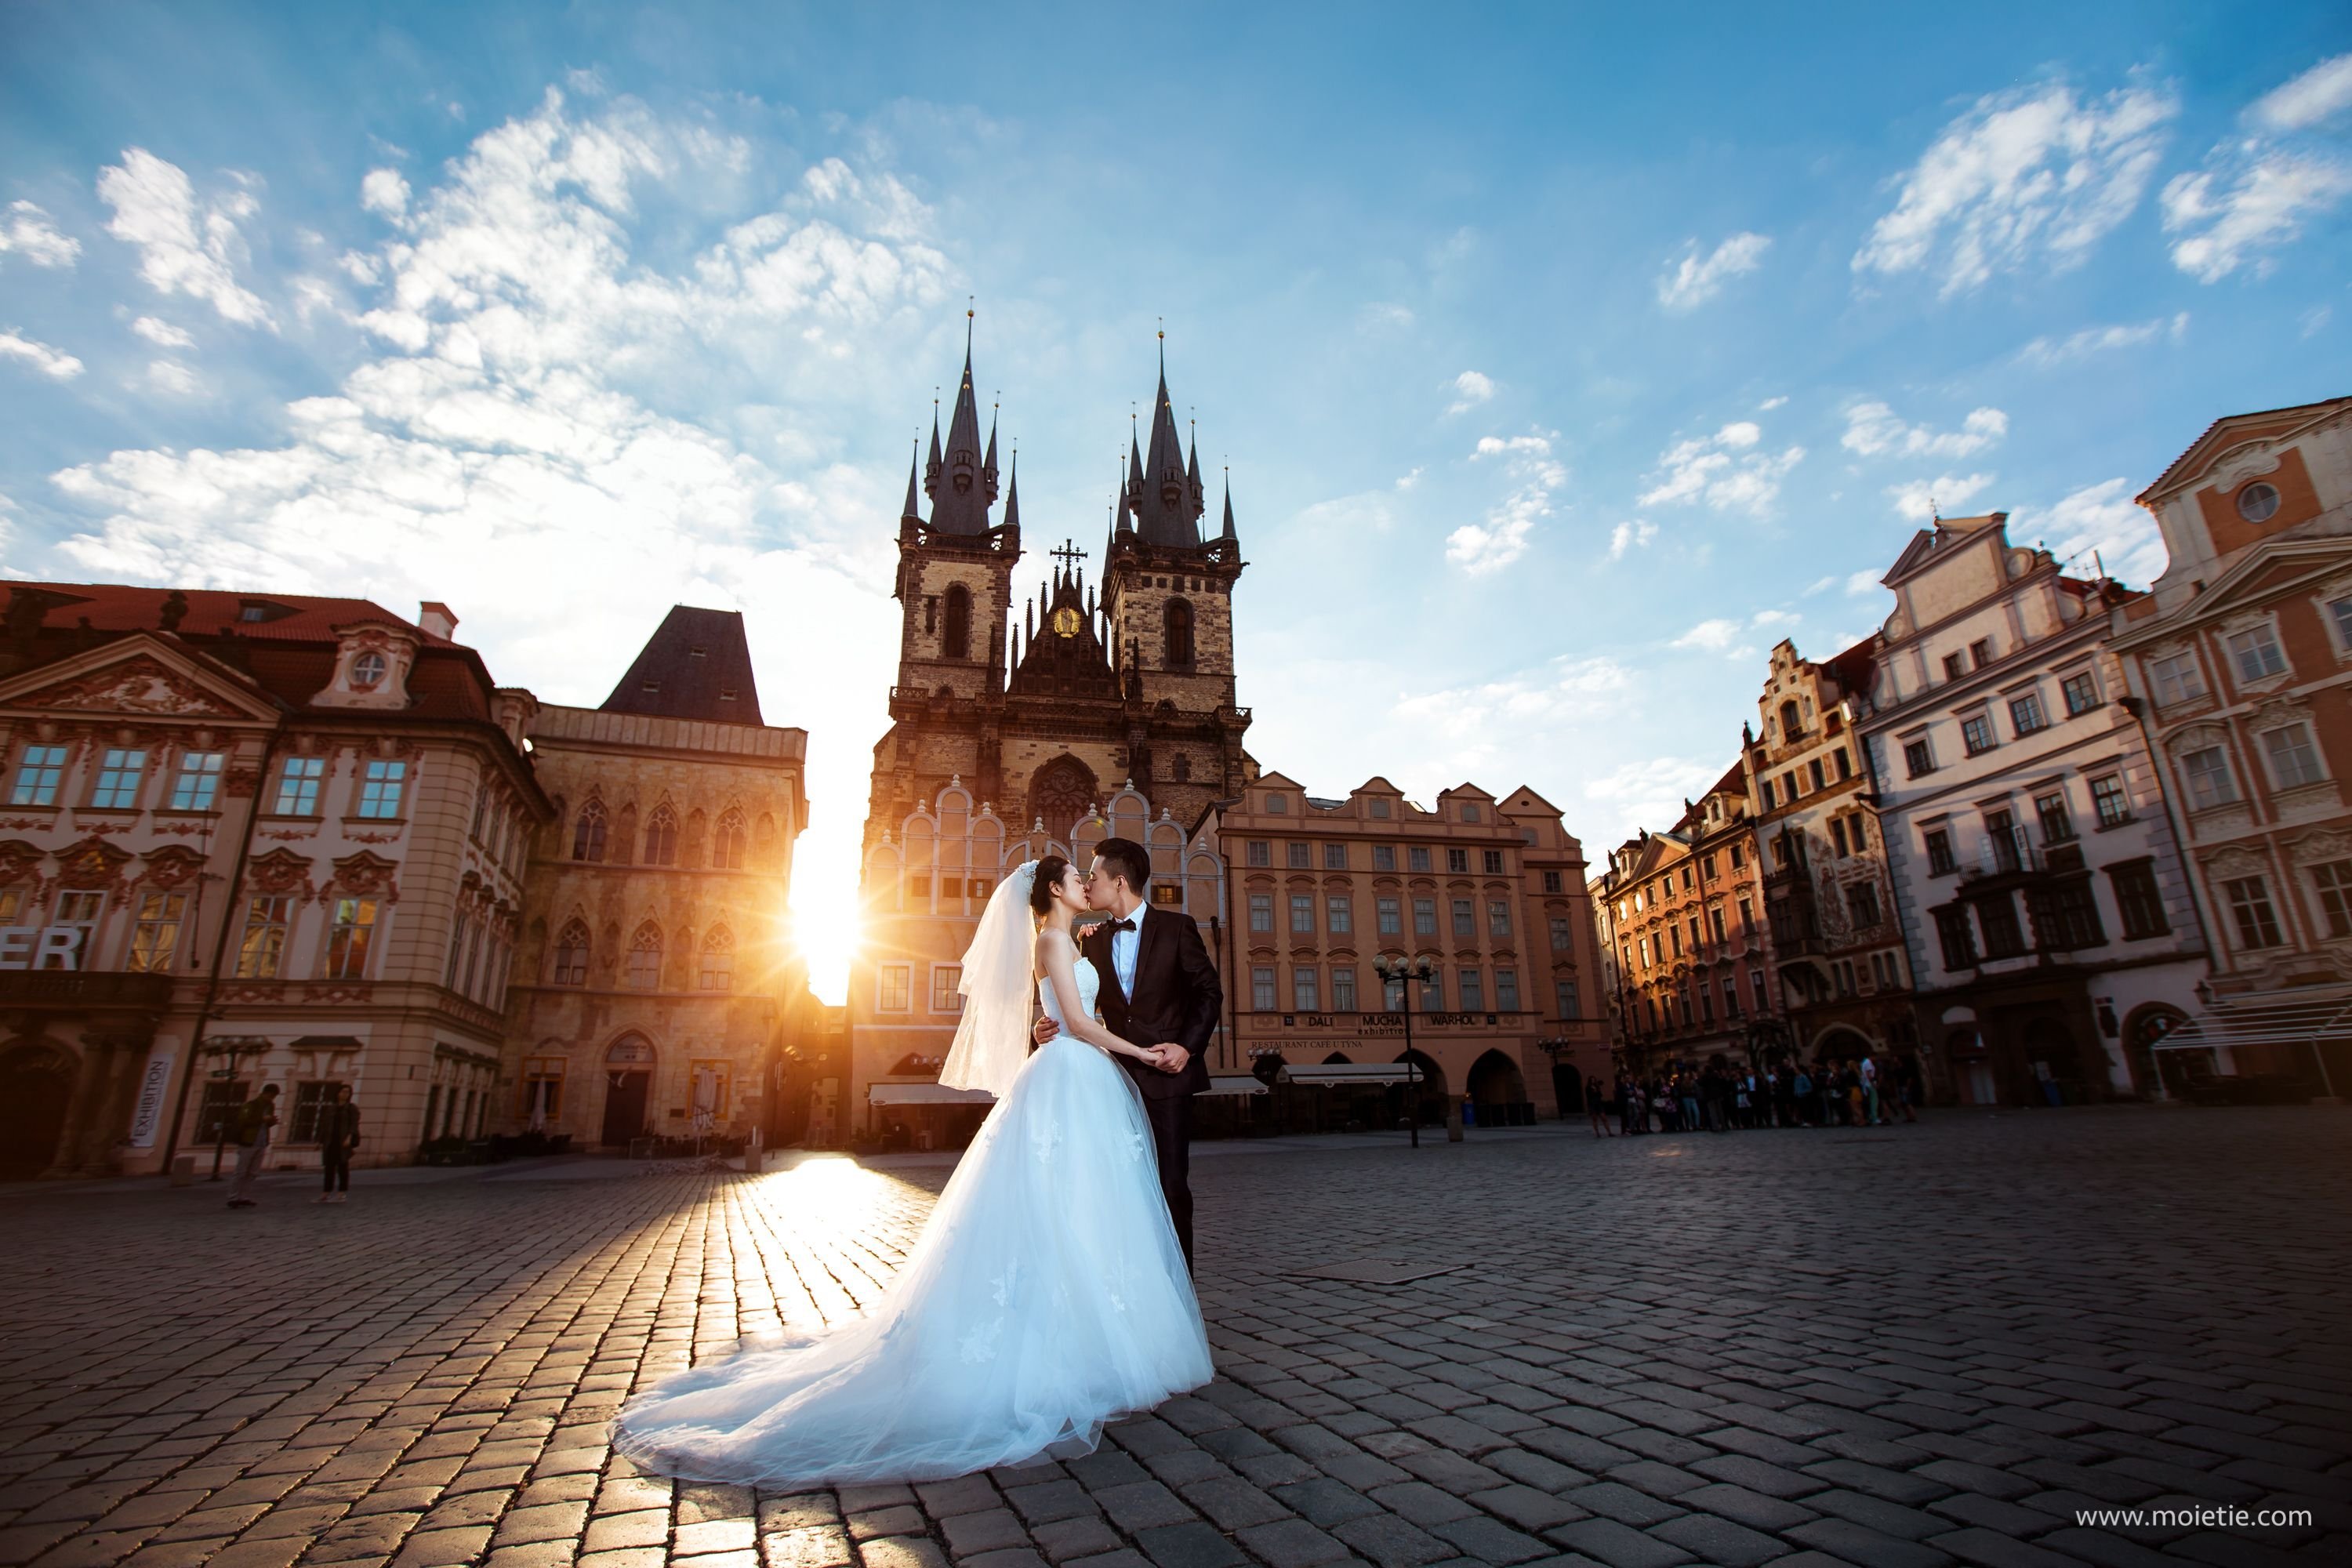 Свадьба в праге: цены, организация, советы невестам в 2021 году